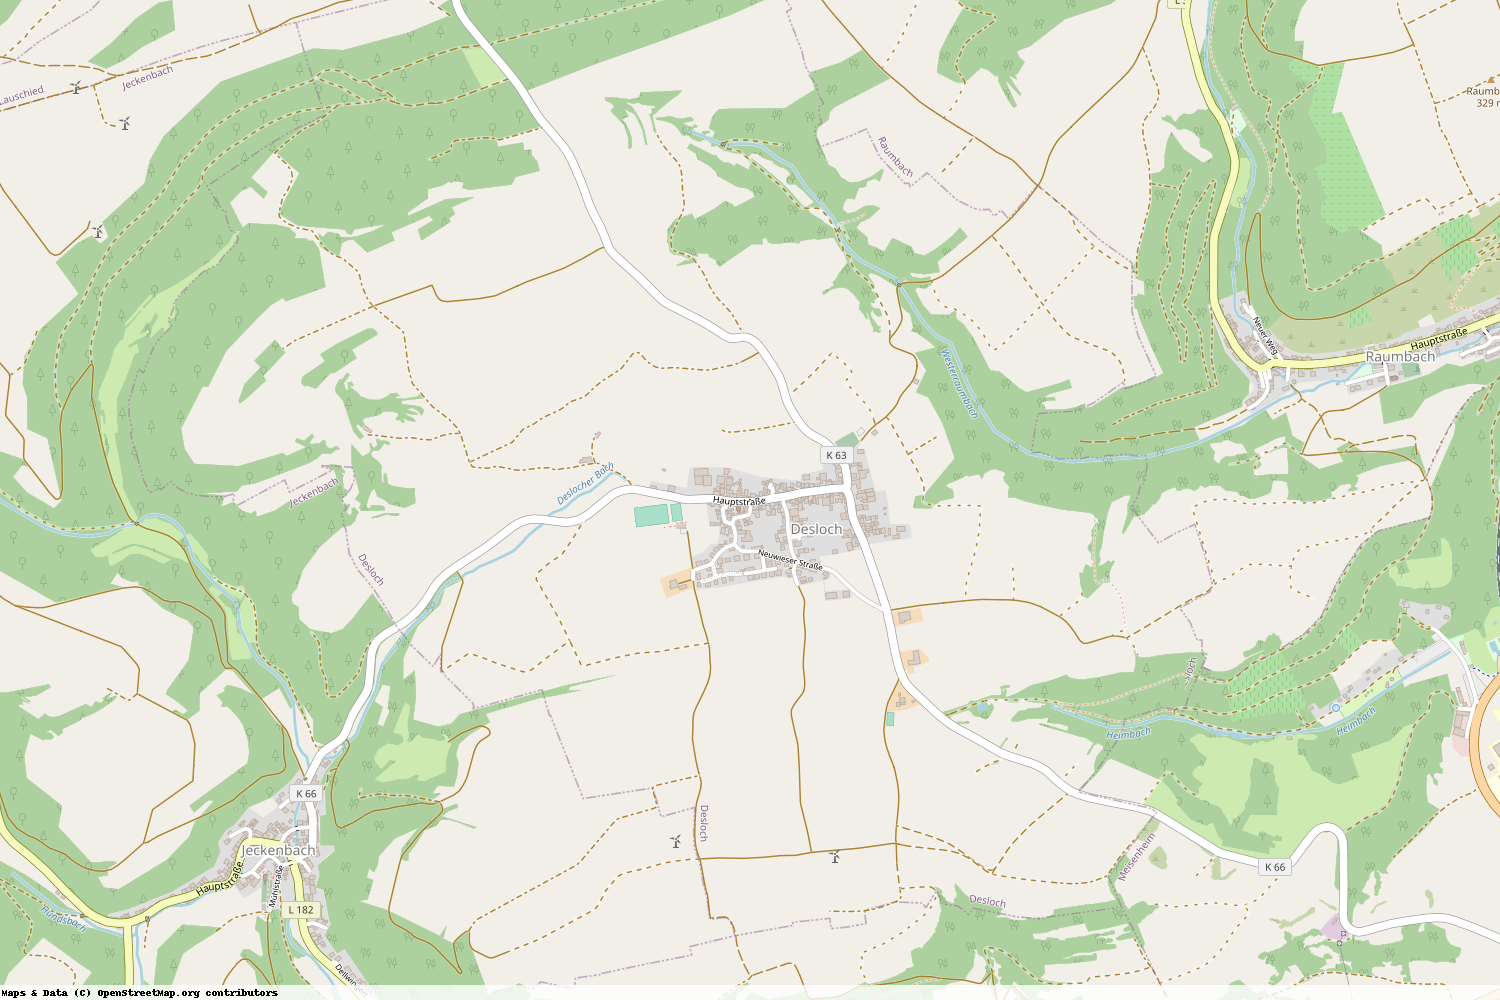 Ist gerade Stromausfall in Rheinland-Pfalz - Bad Kreuznach - Desloch?